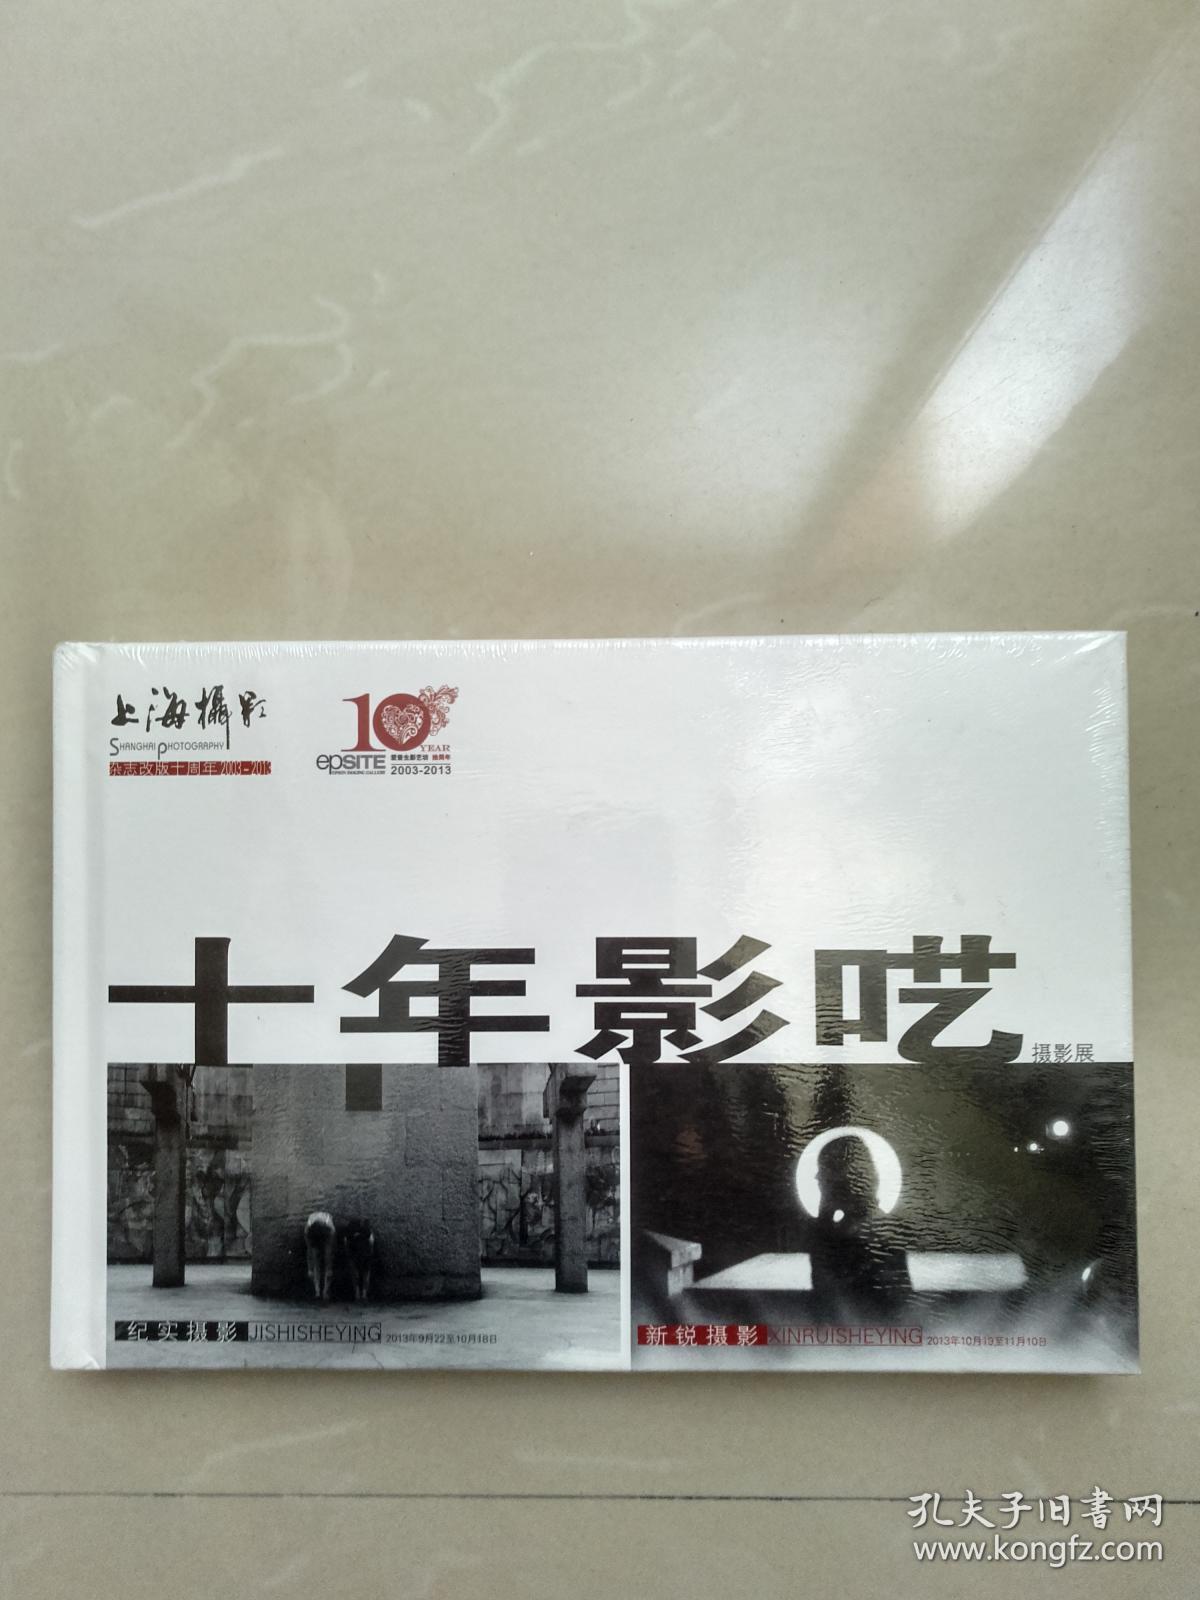 十年影呓（《上海摄影》杂志改版10周年摄影展画册）精装全新塑封、